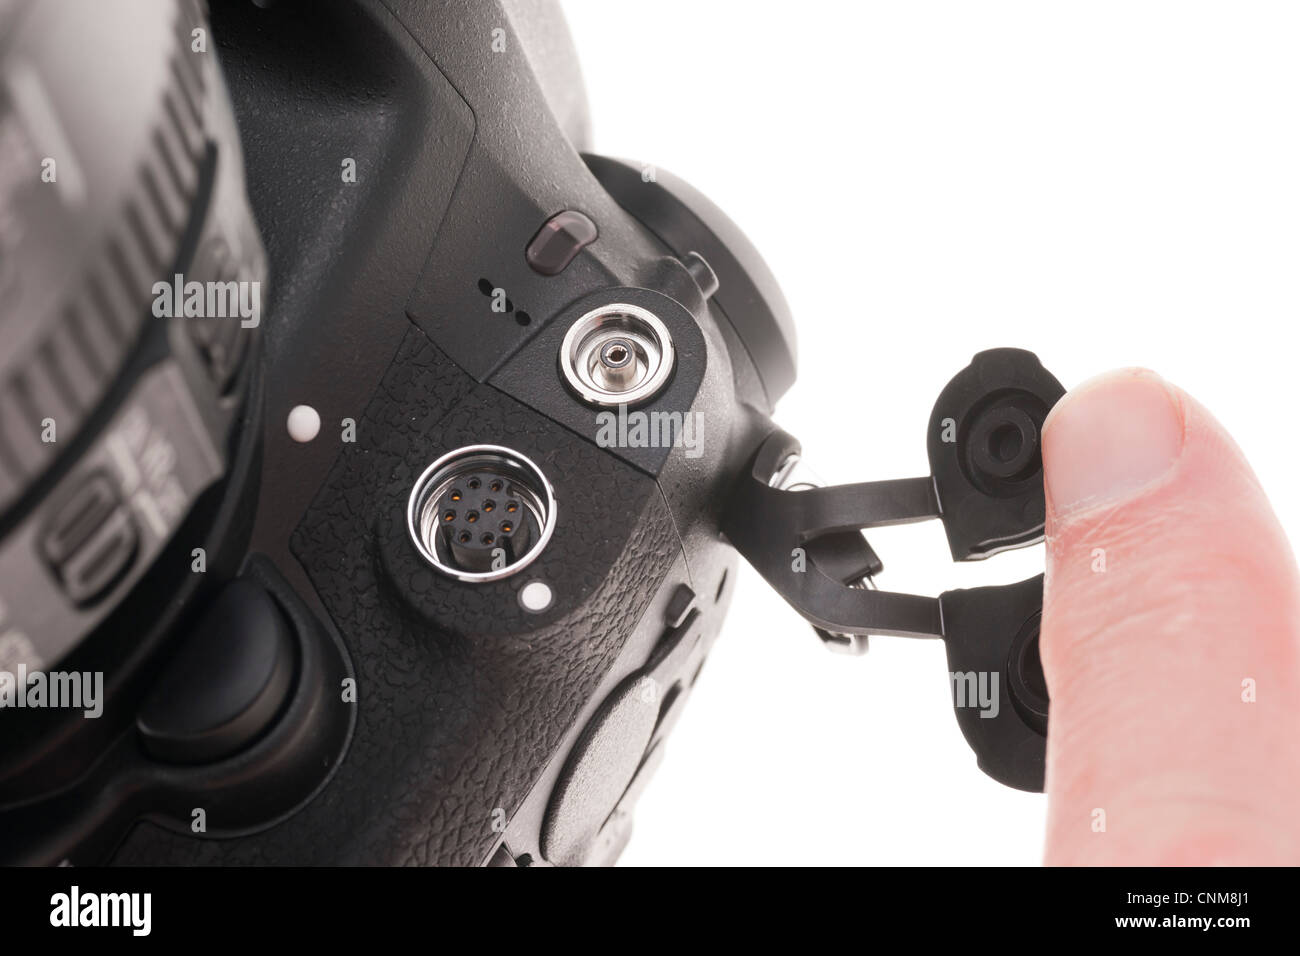 Matériel photographique Nikon D4 - accessoire auxiliaire et sockets flash. Banque D'Images